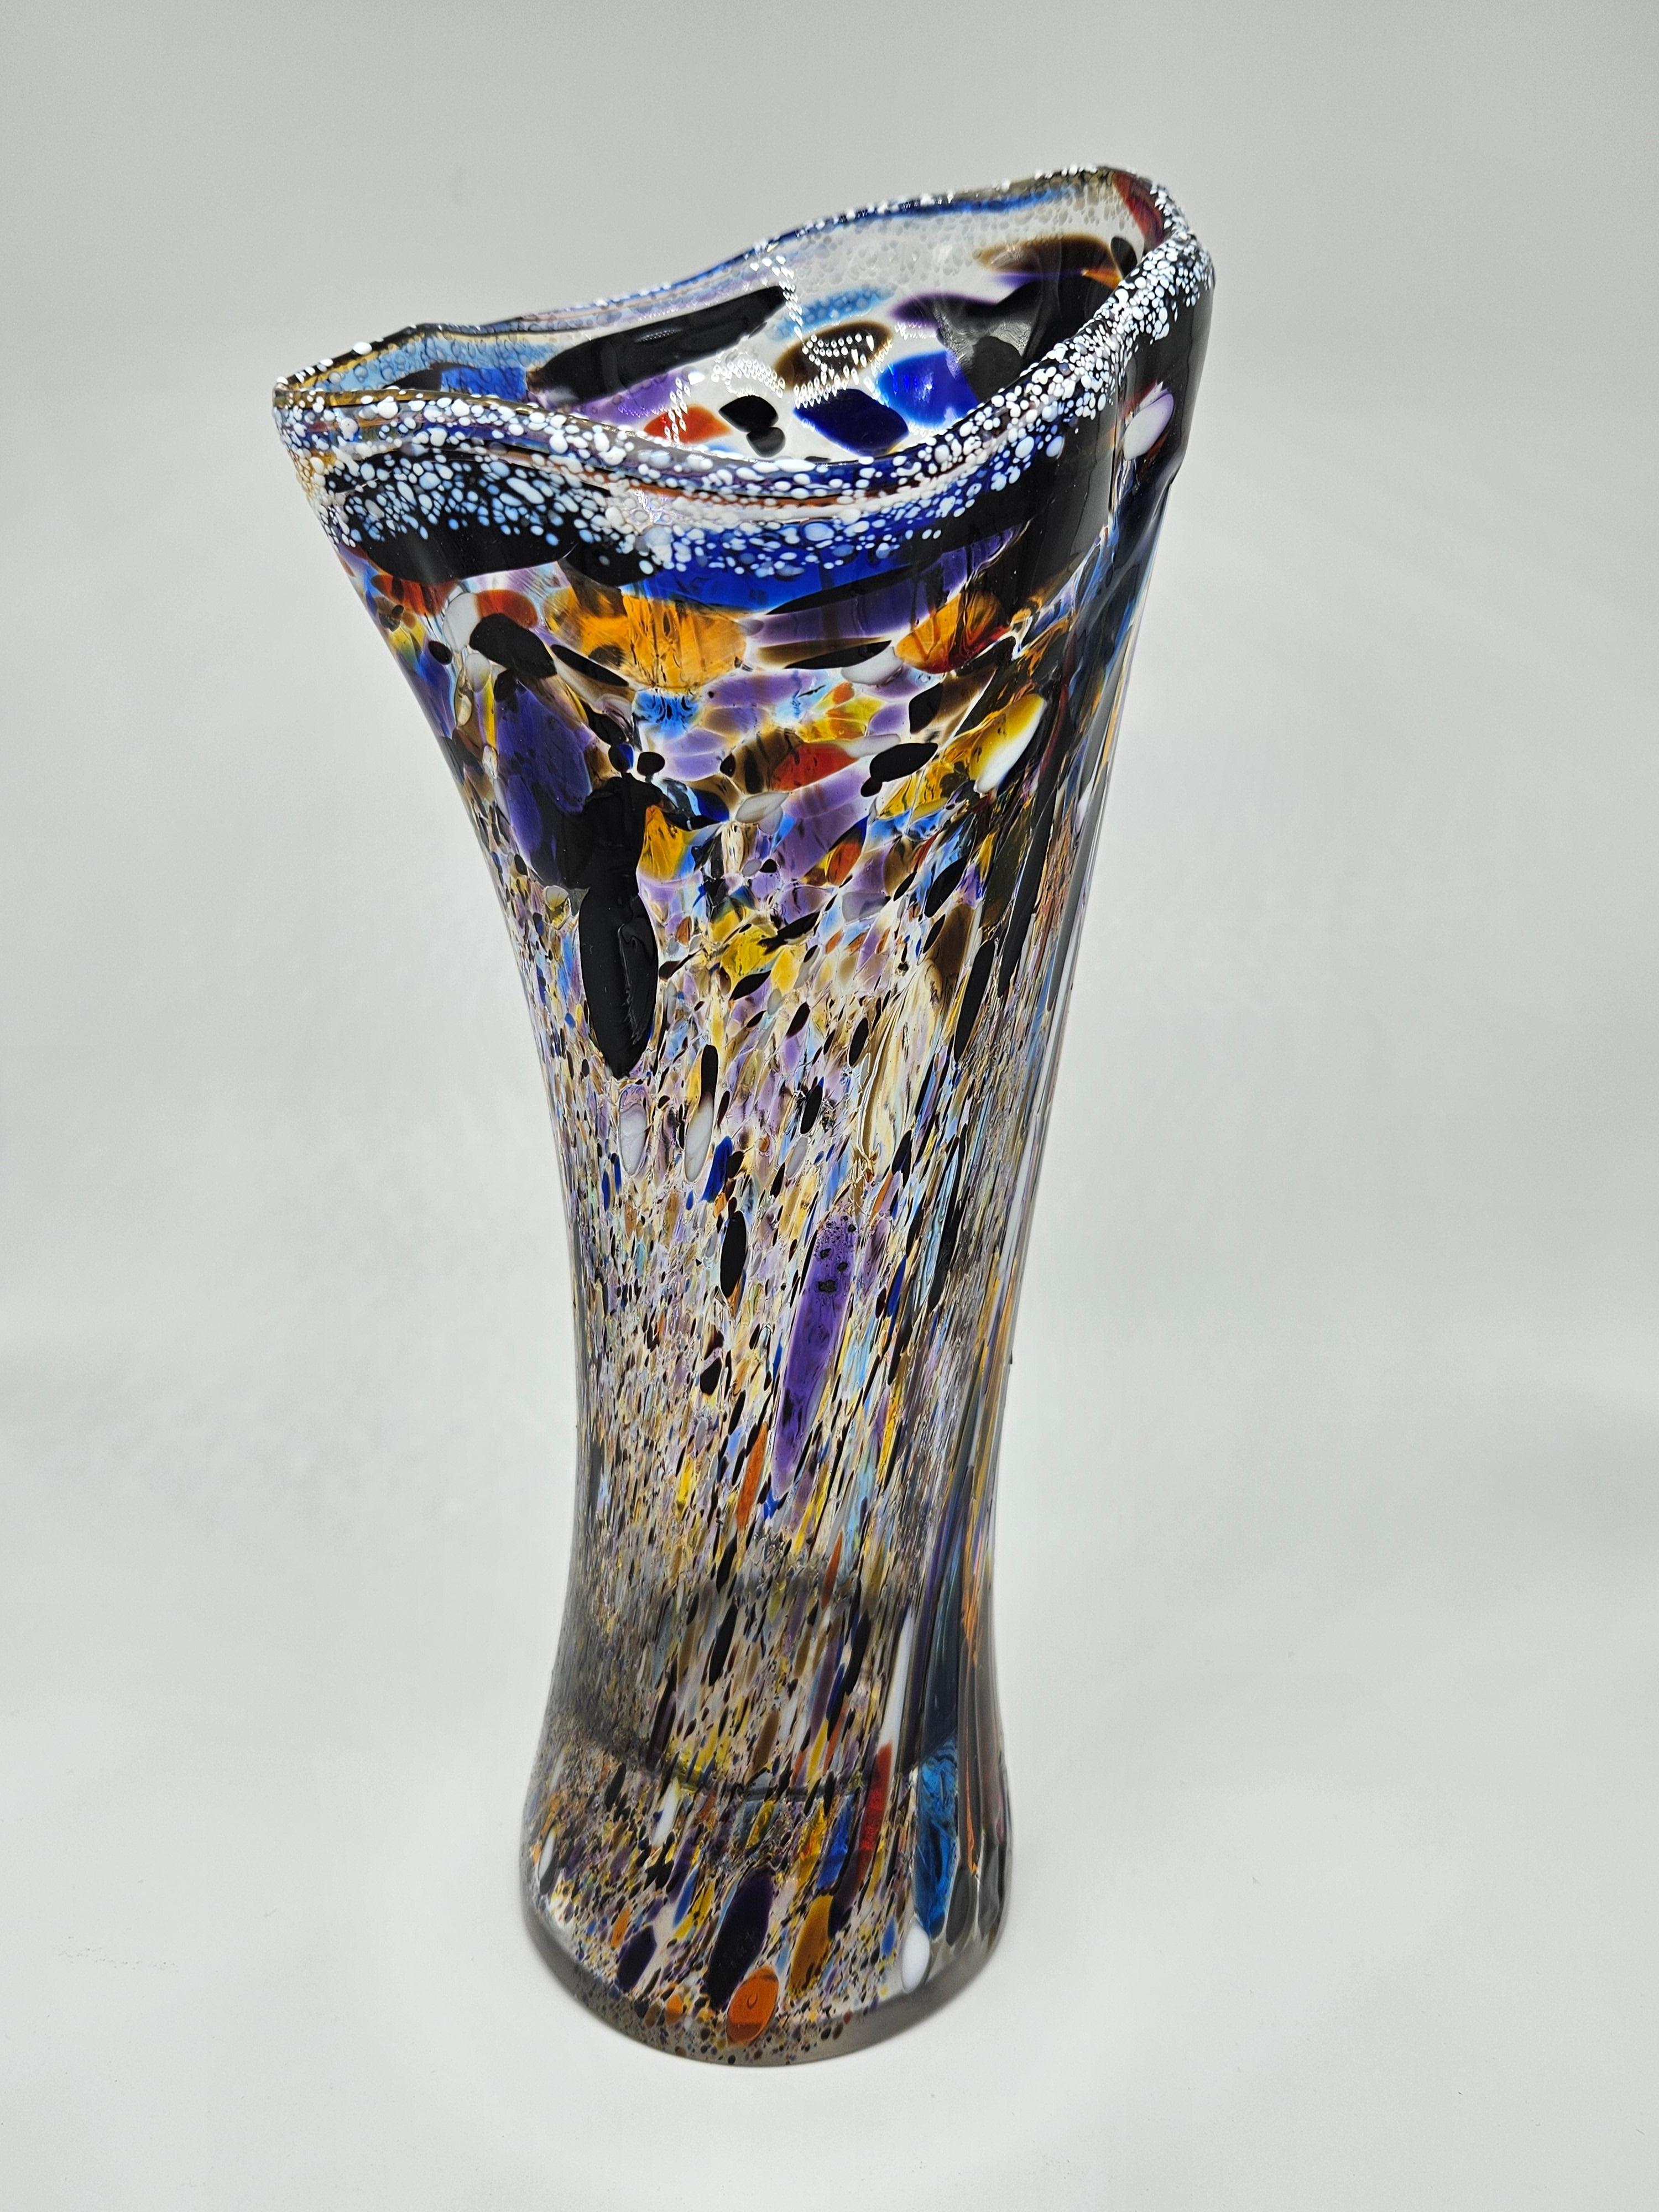 Vaso in vetro di Murano policromo, molto particolare di grande effetto scenografico.